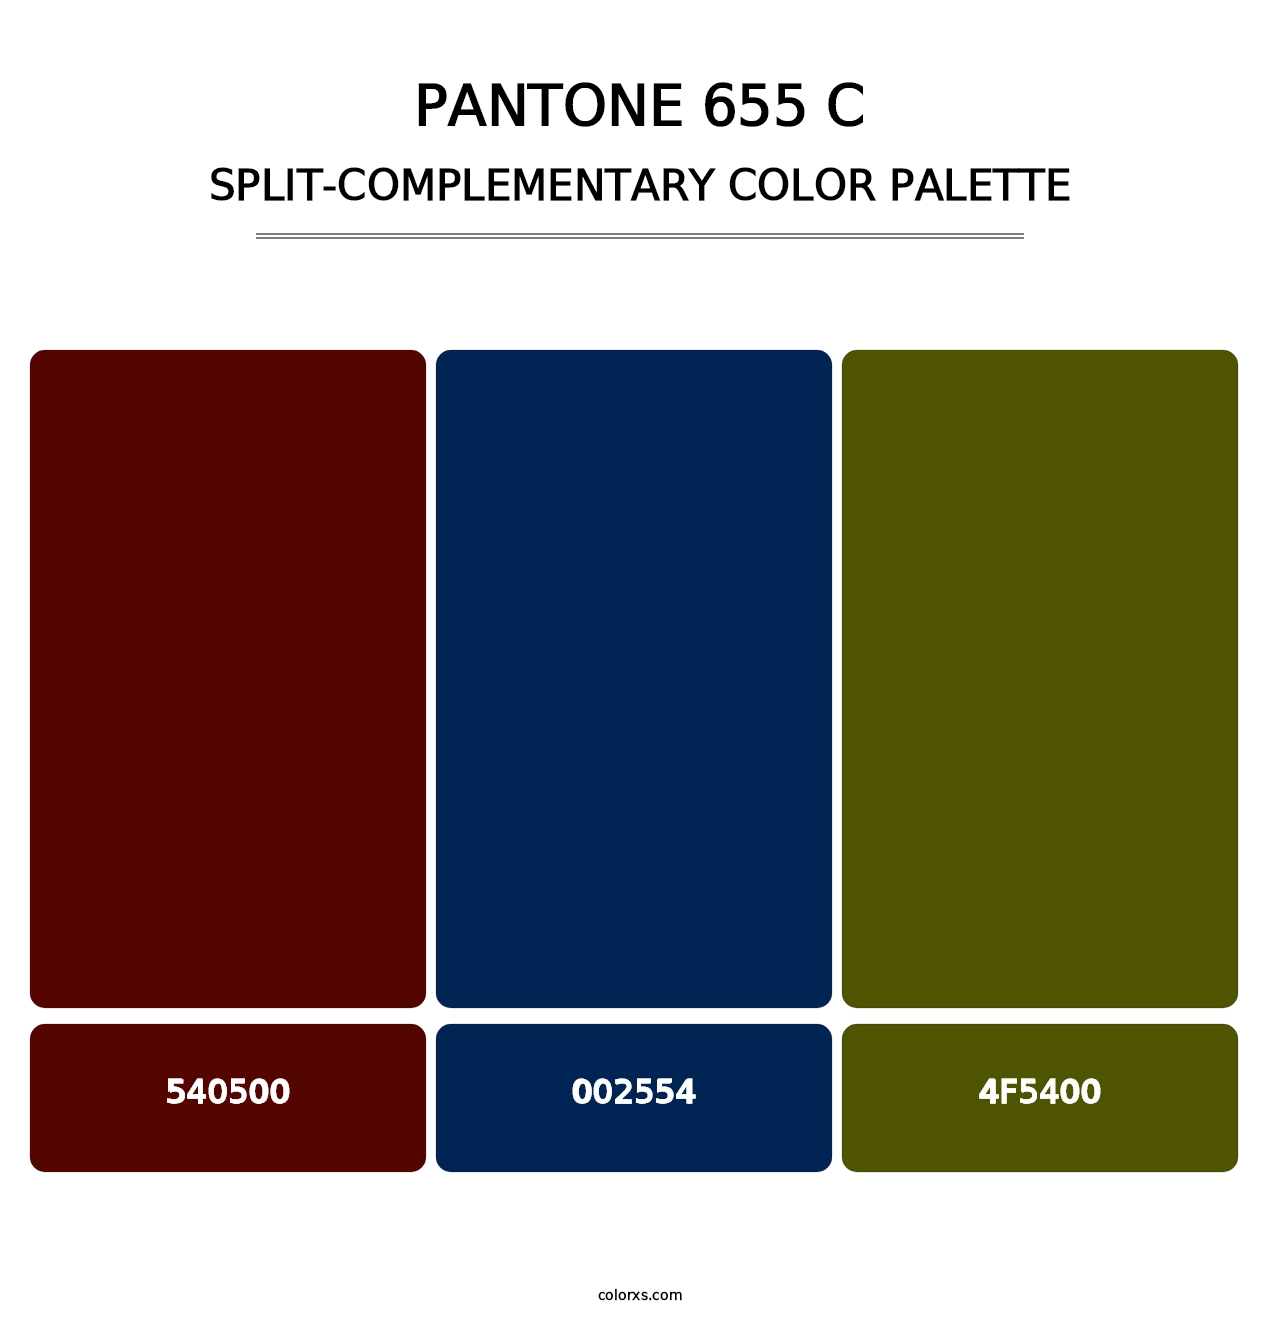 PANTONE 655 C - Split-Complementary Color Palette